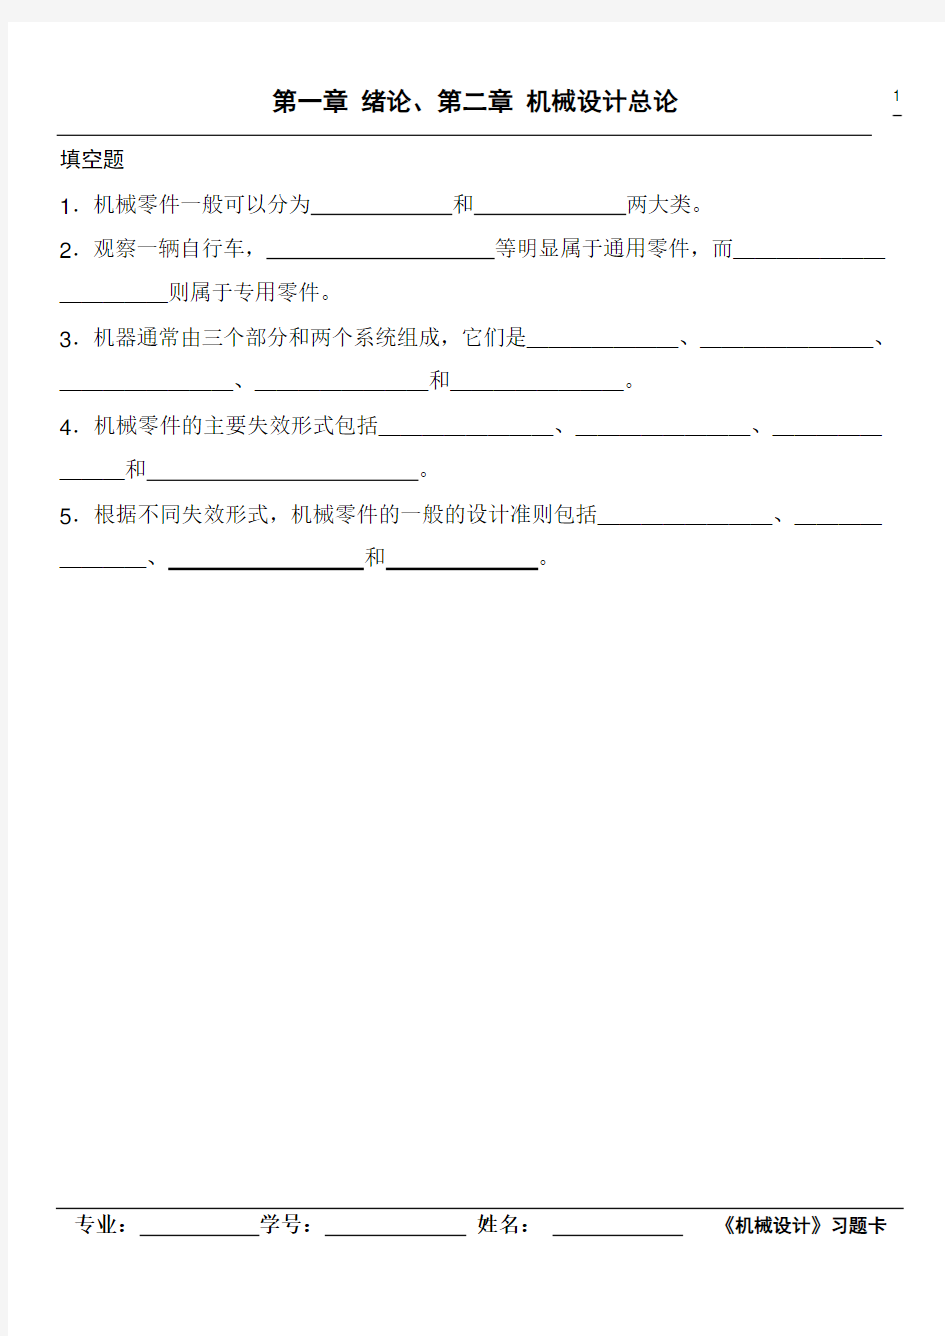 2013浙江工业大学机械设计习题卡(上)